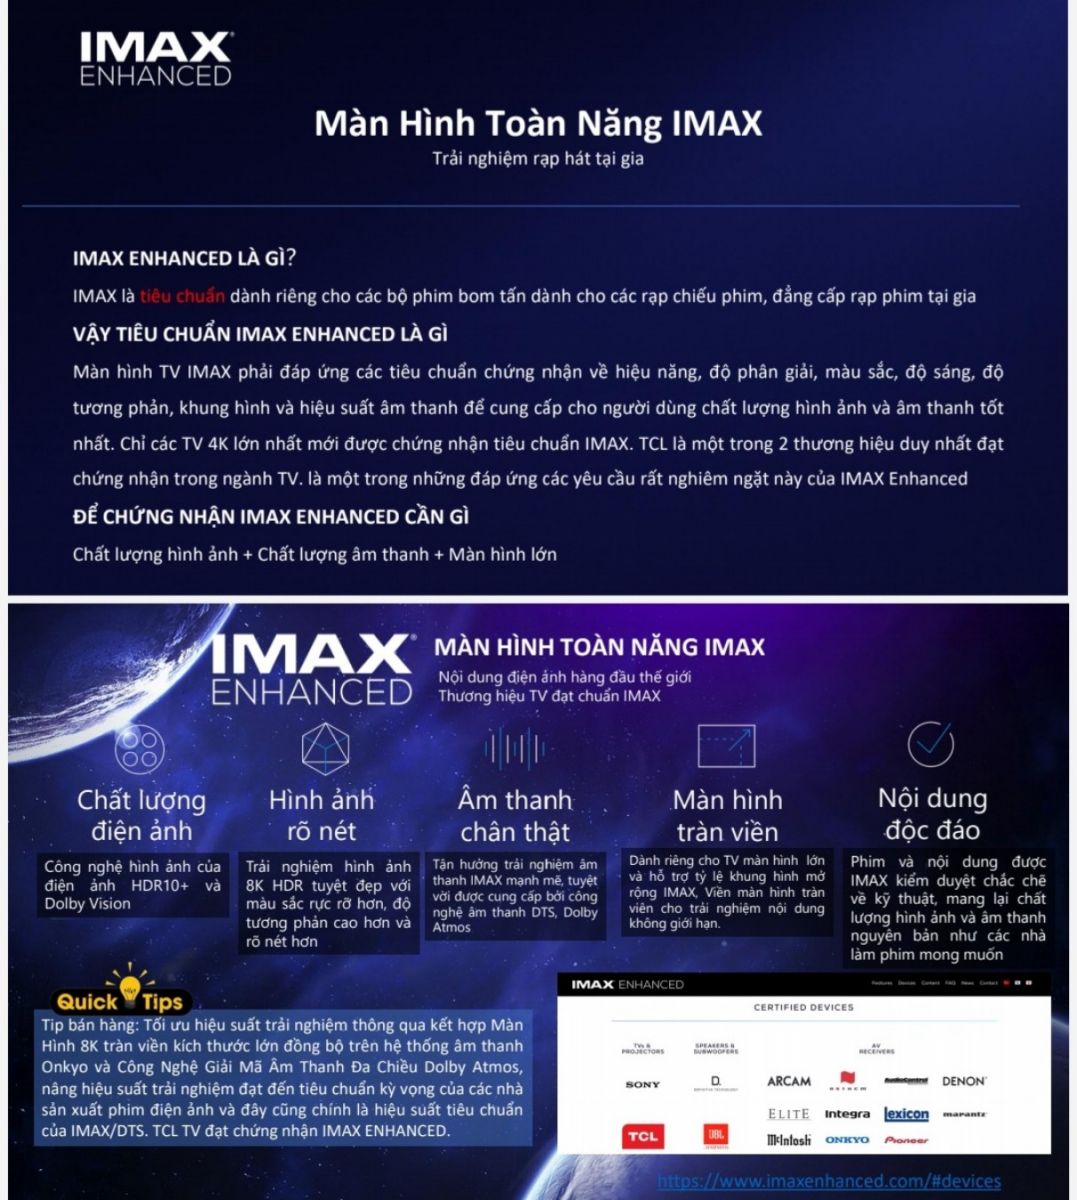 Tìm hiểu về màn hình toàn năng IMAX của Tivi TCL model năm 2021